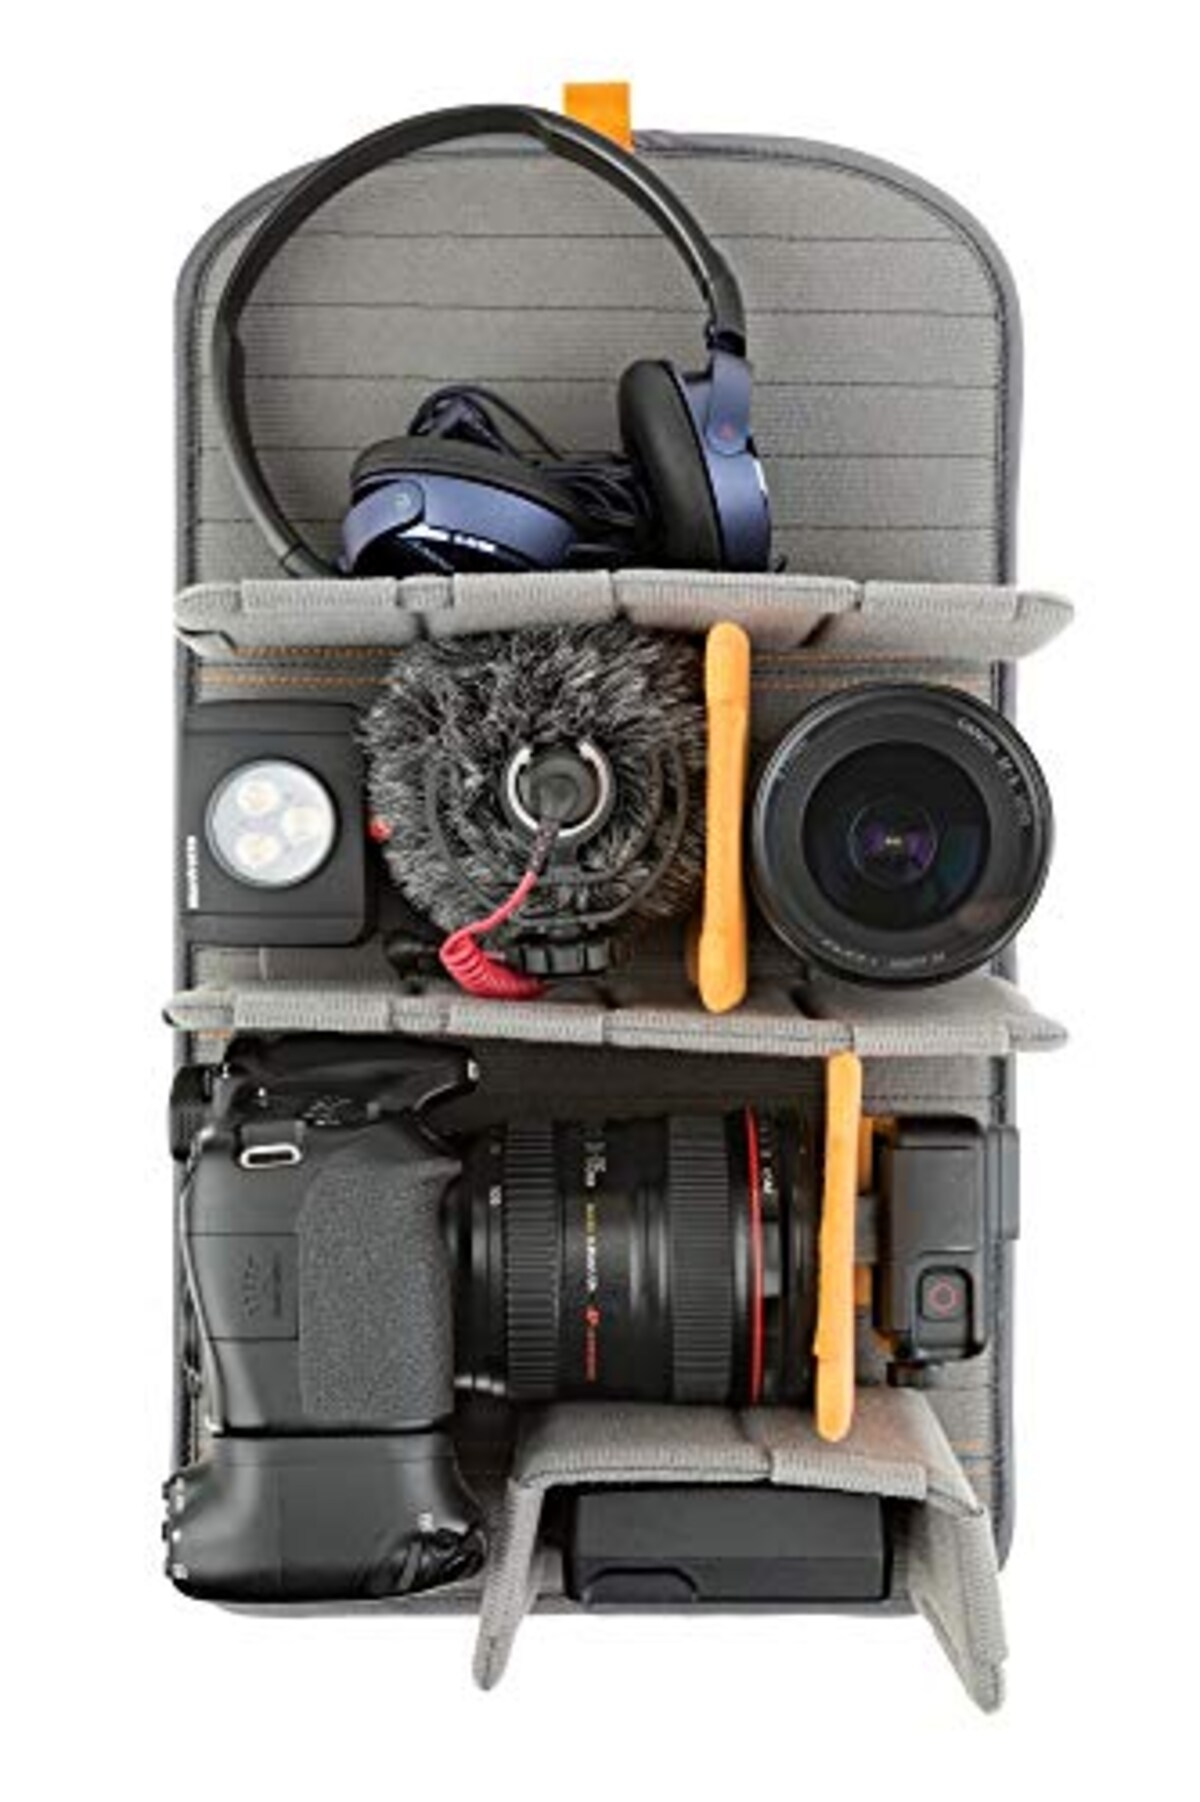  [Lowepro] カメラリュック フリーライン メンズ ブラック 48.7cm×29.3cm×20.8cm画像4 